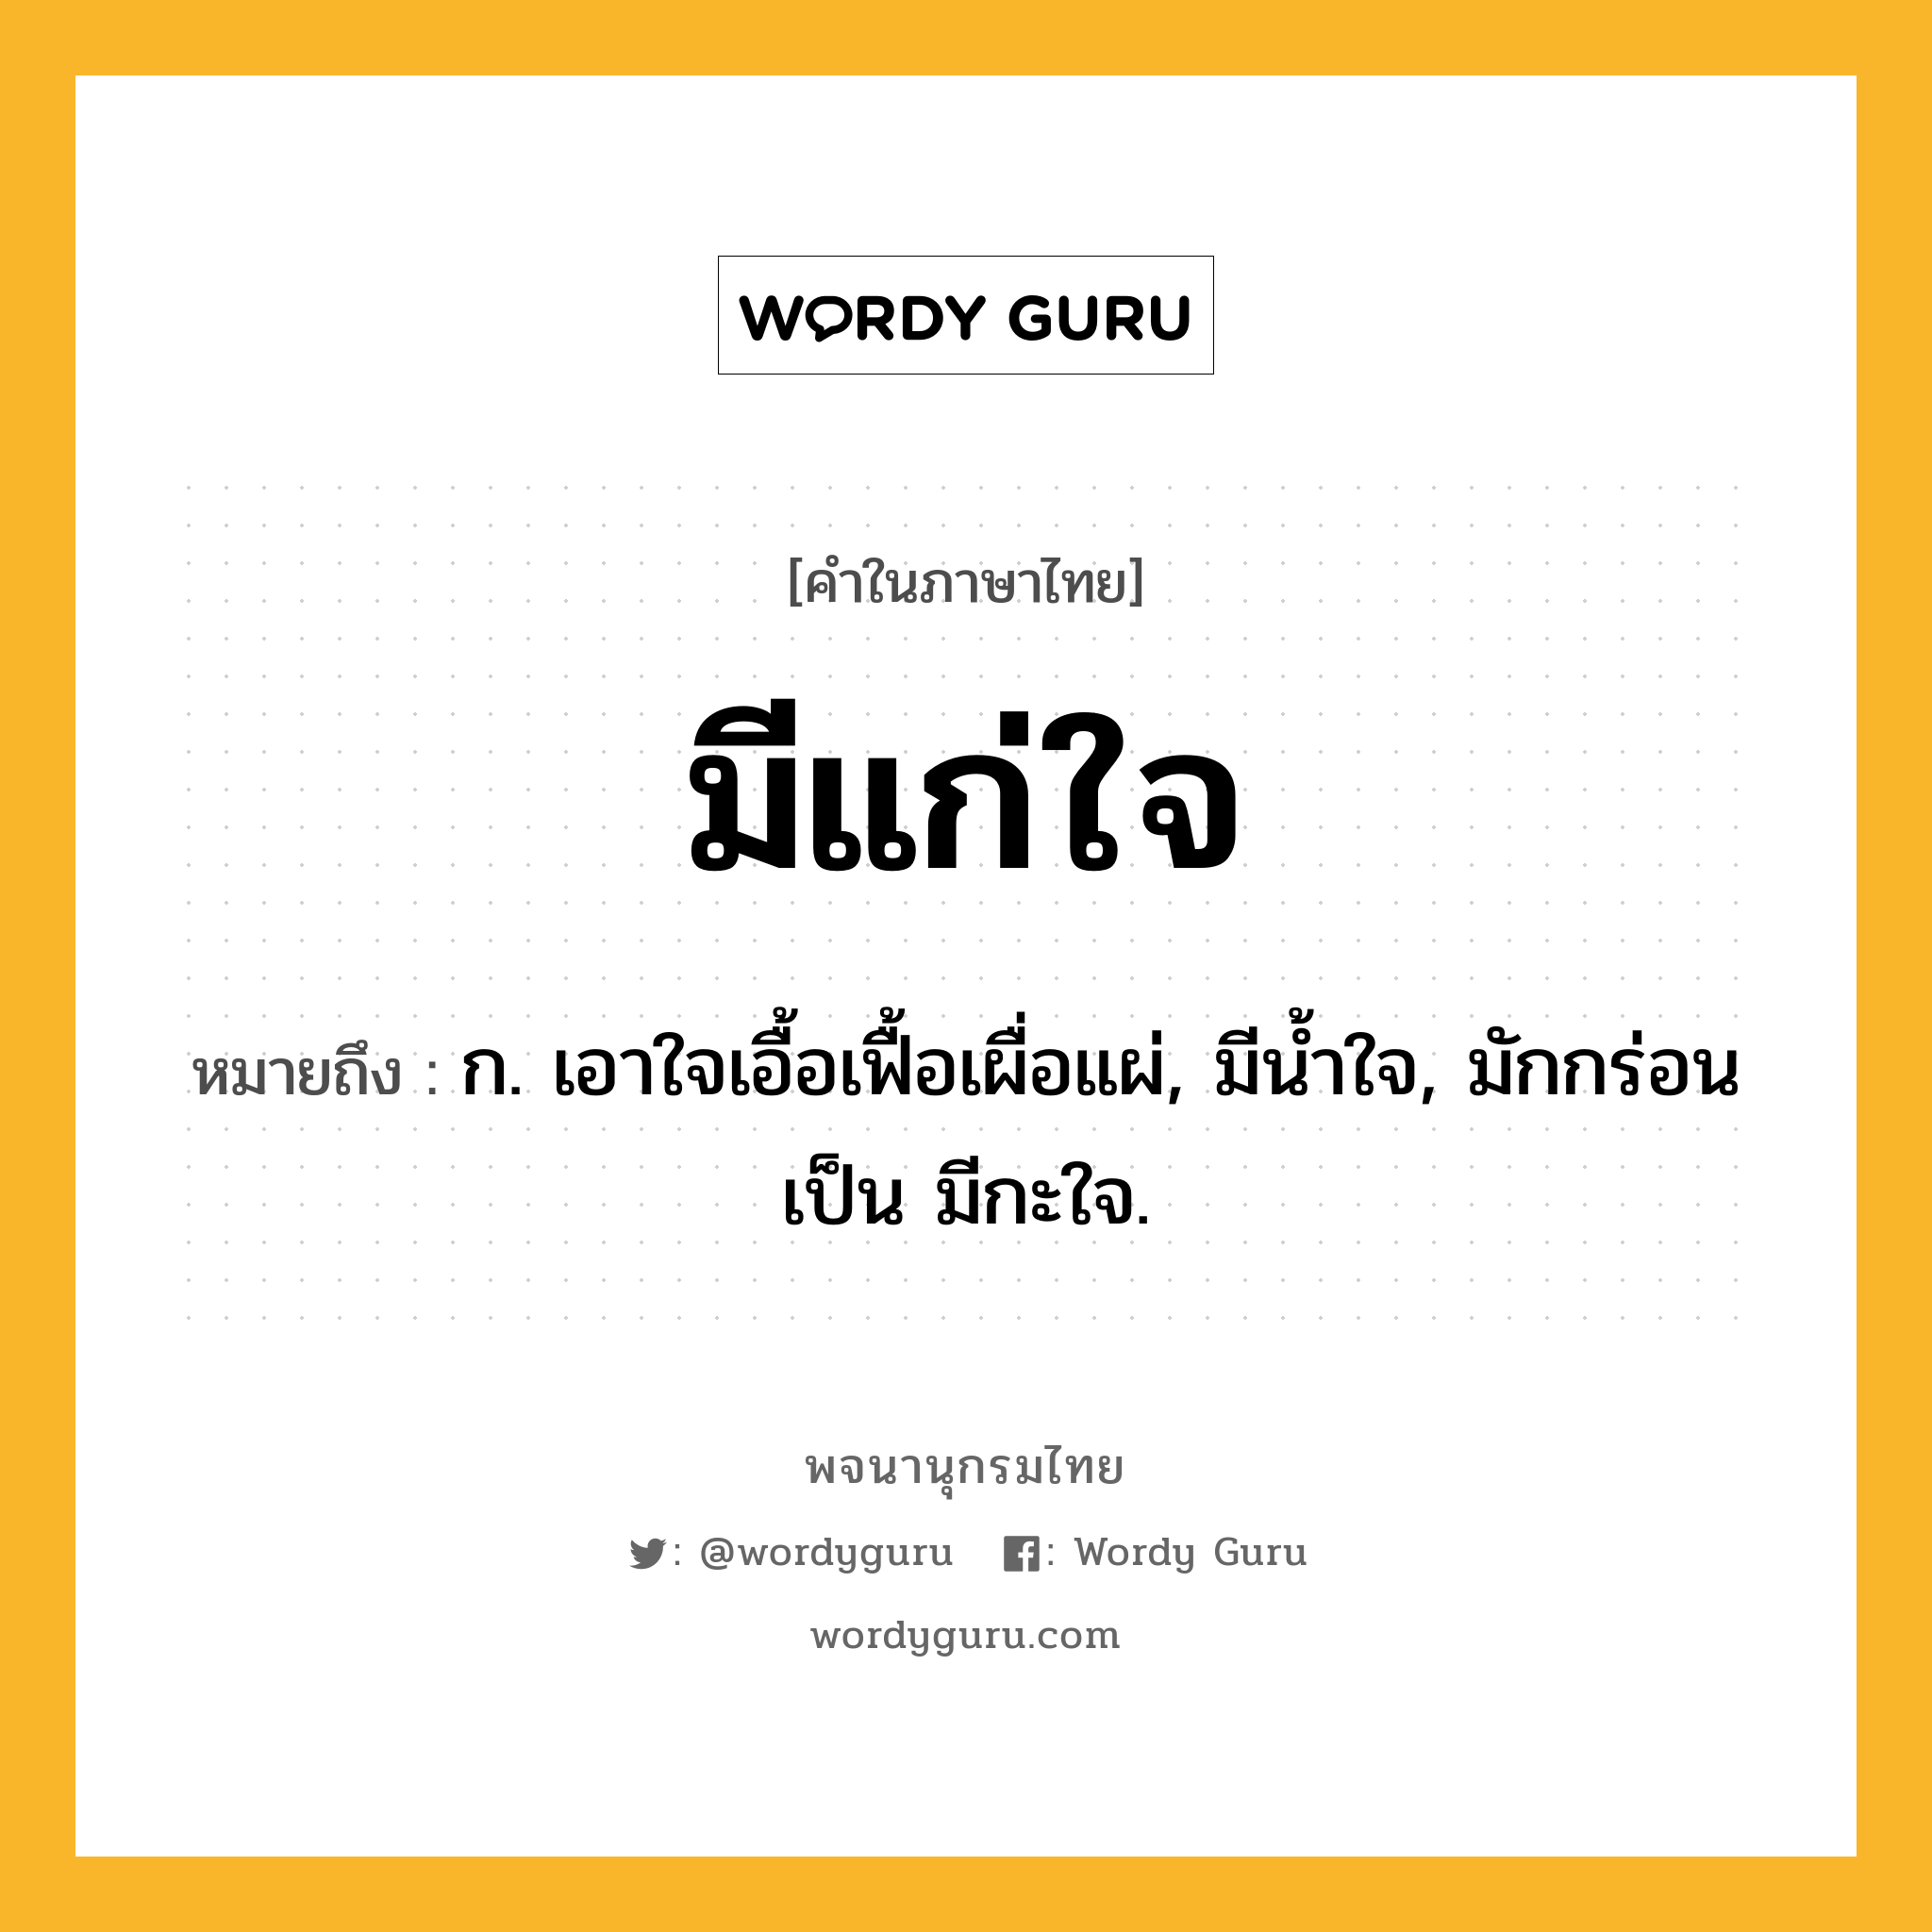 มีแก่ใจ หมายถึงอะไร?, คำในภาษาไทย มีแก่ใจ หมายถึง ก. เอาใจเอื้อเฟื้อเผื่อแผ่, มีนํ้าใจ, มักกร่อนเป็น มีกะใจ.